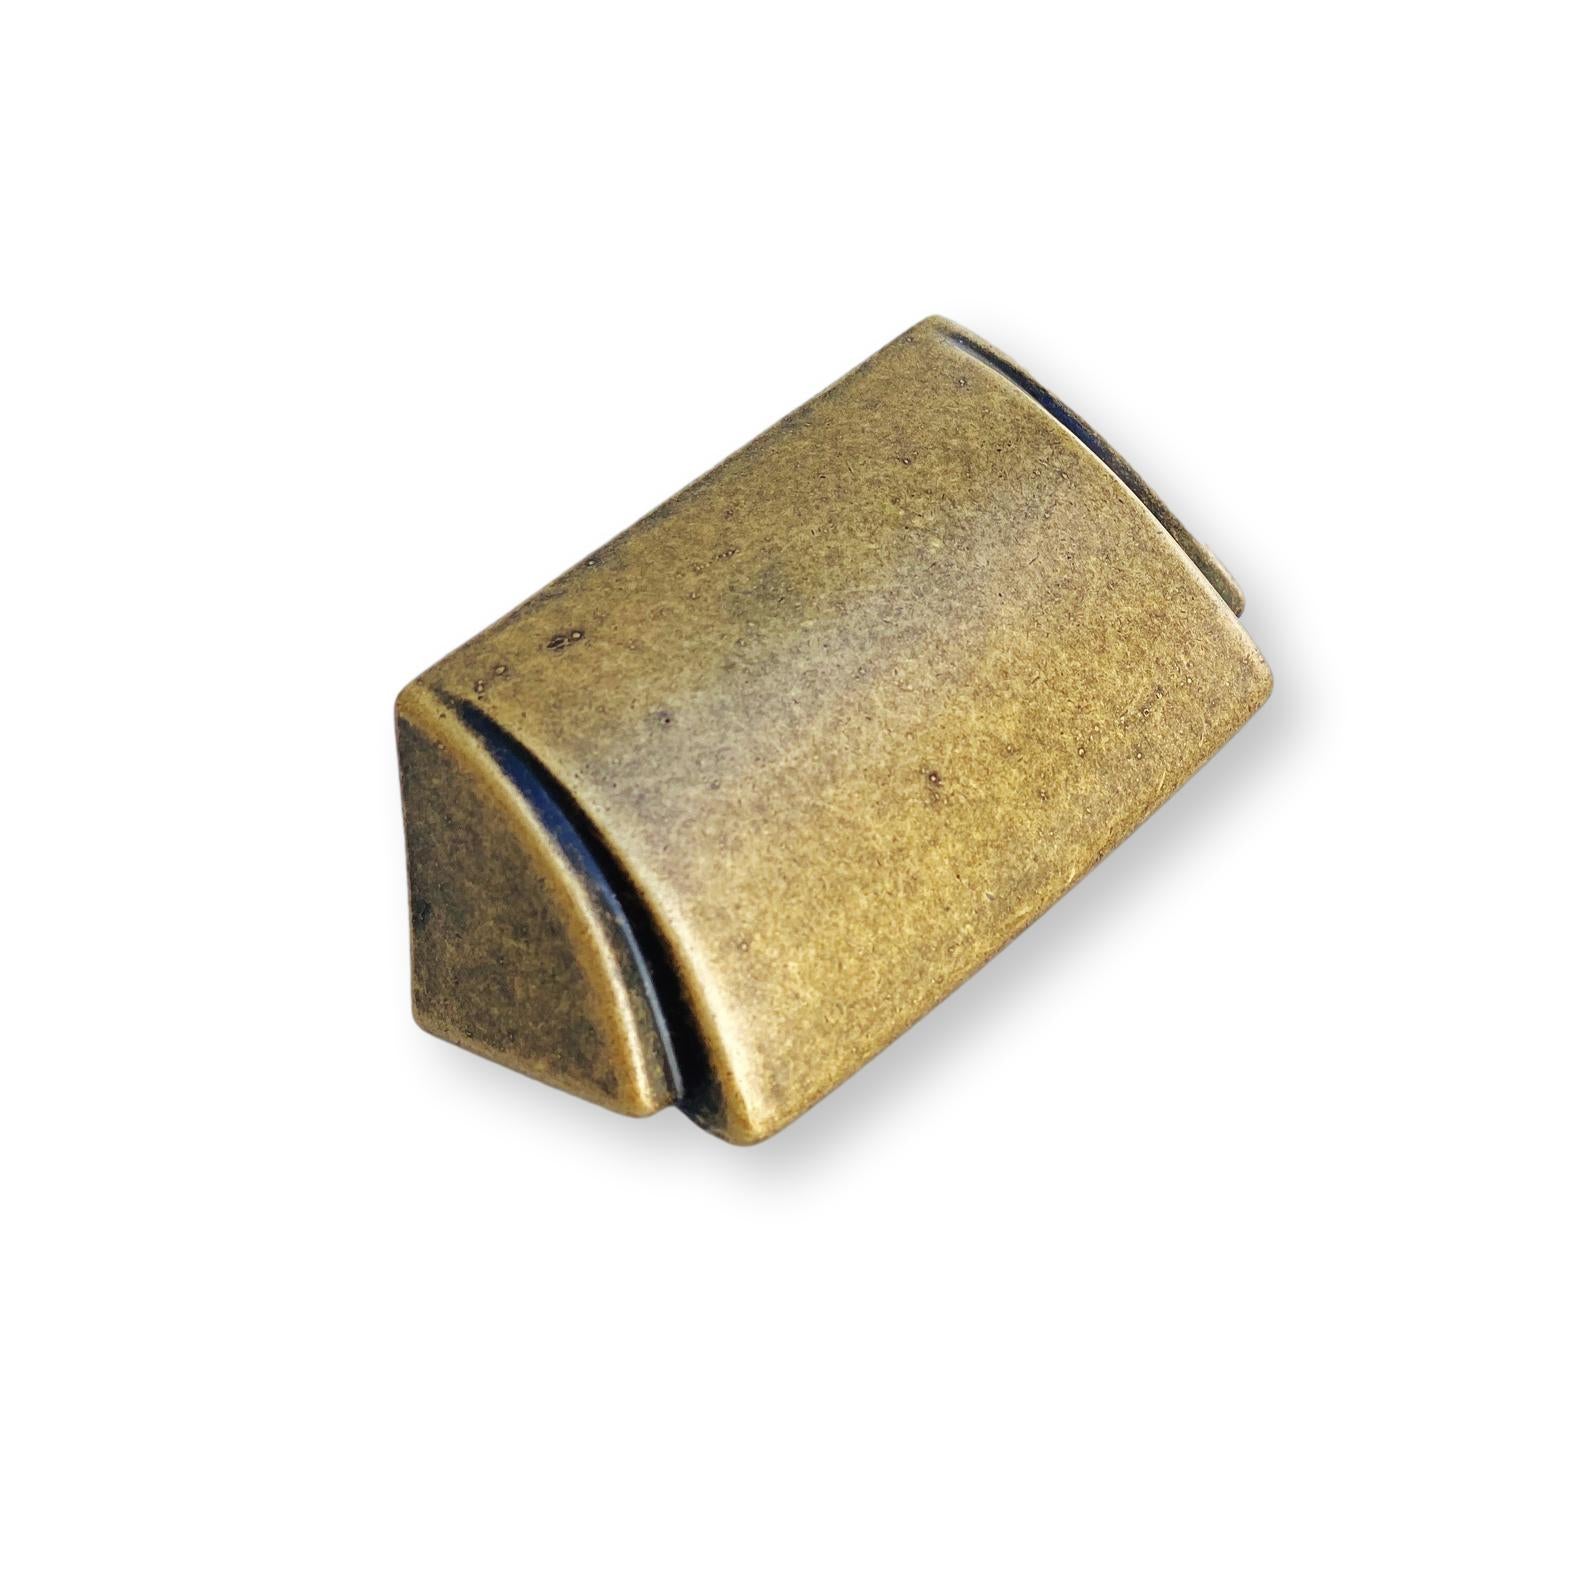 Round Ella Antique Bronze Round Cabinet Knob – Forge Hardware Studio